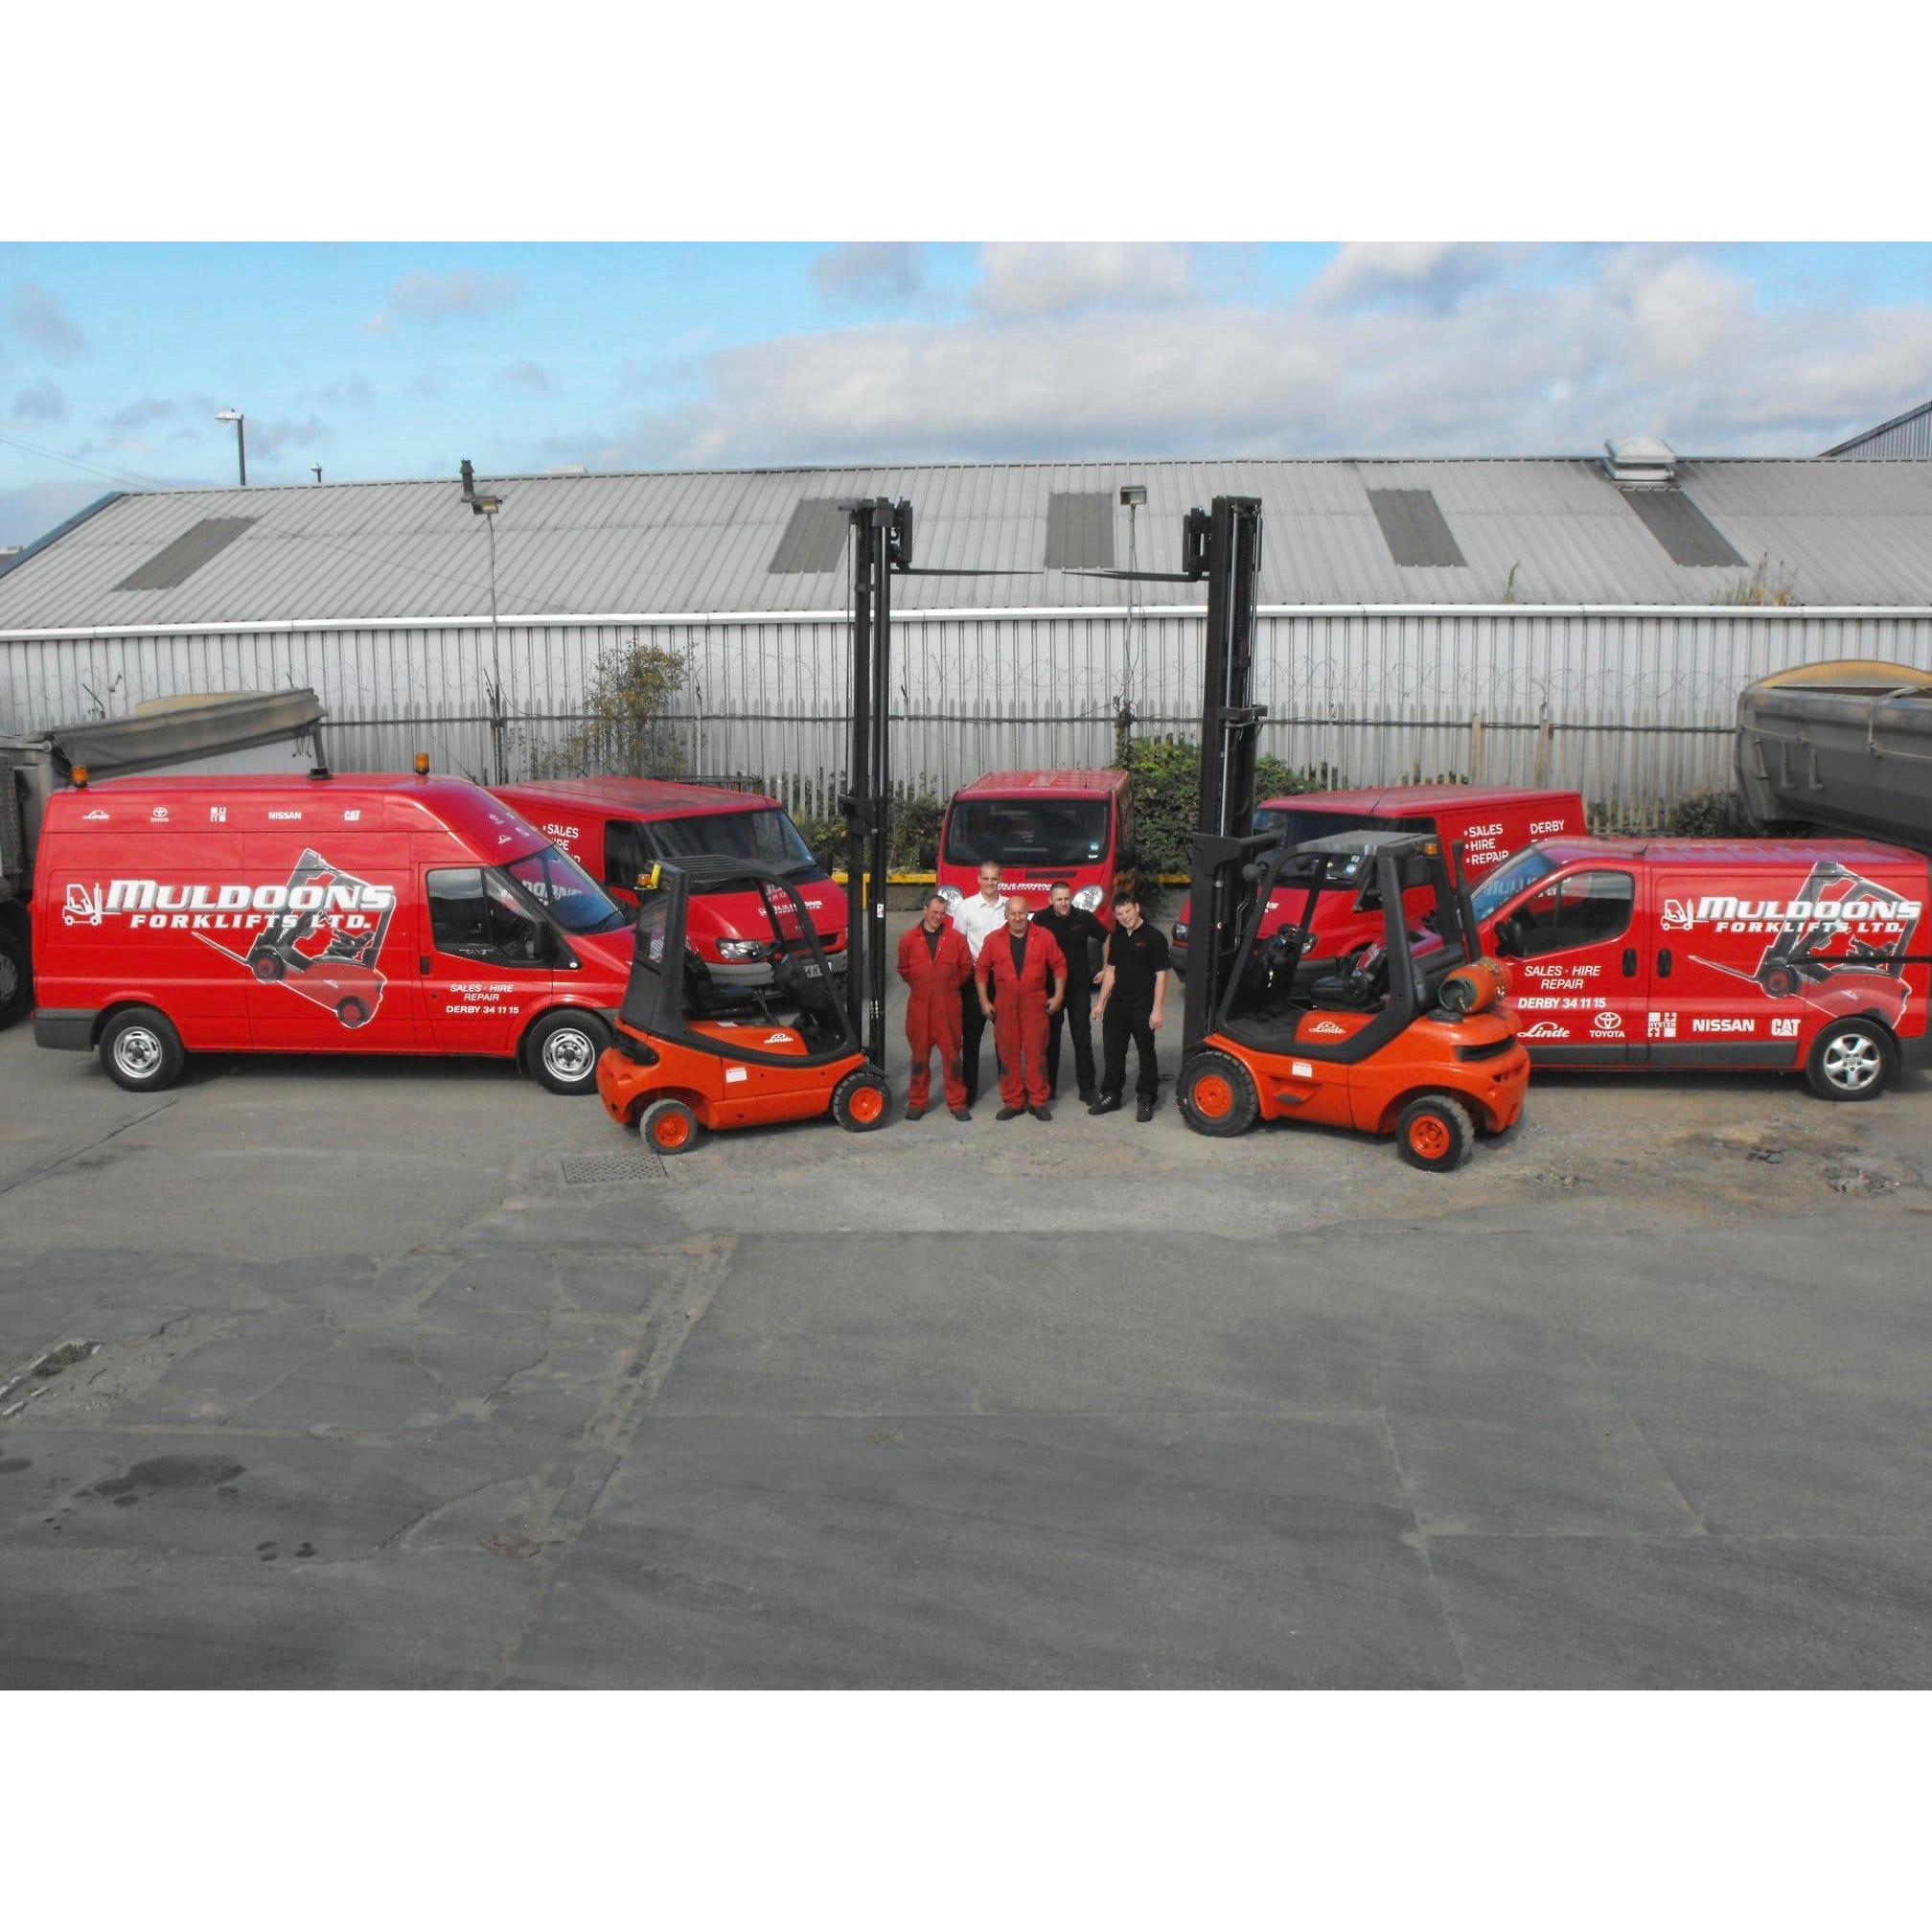 LOGO Muldoons Forklifts Ltd Derby 01332 341115